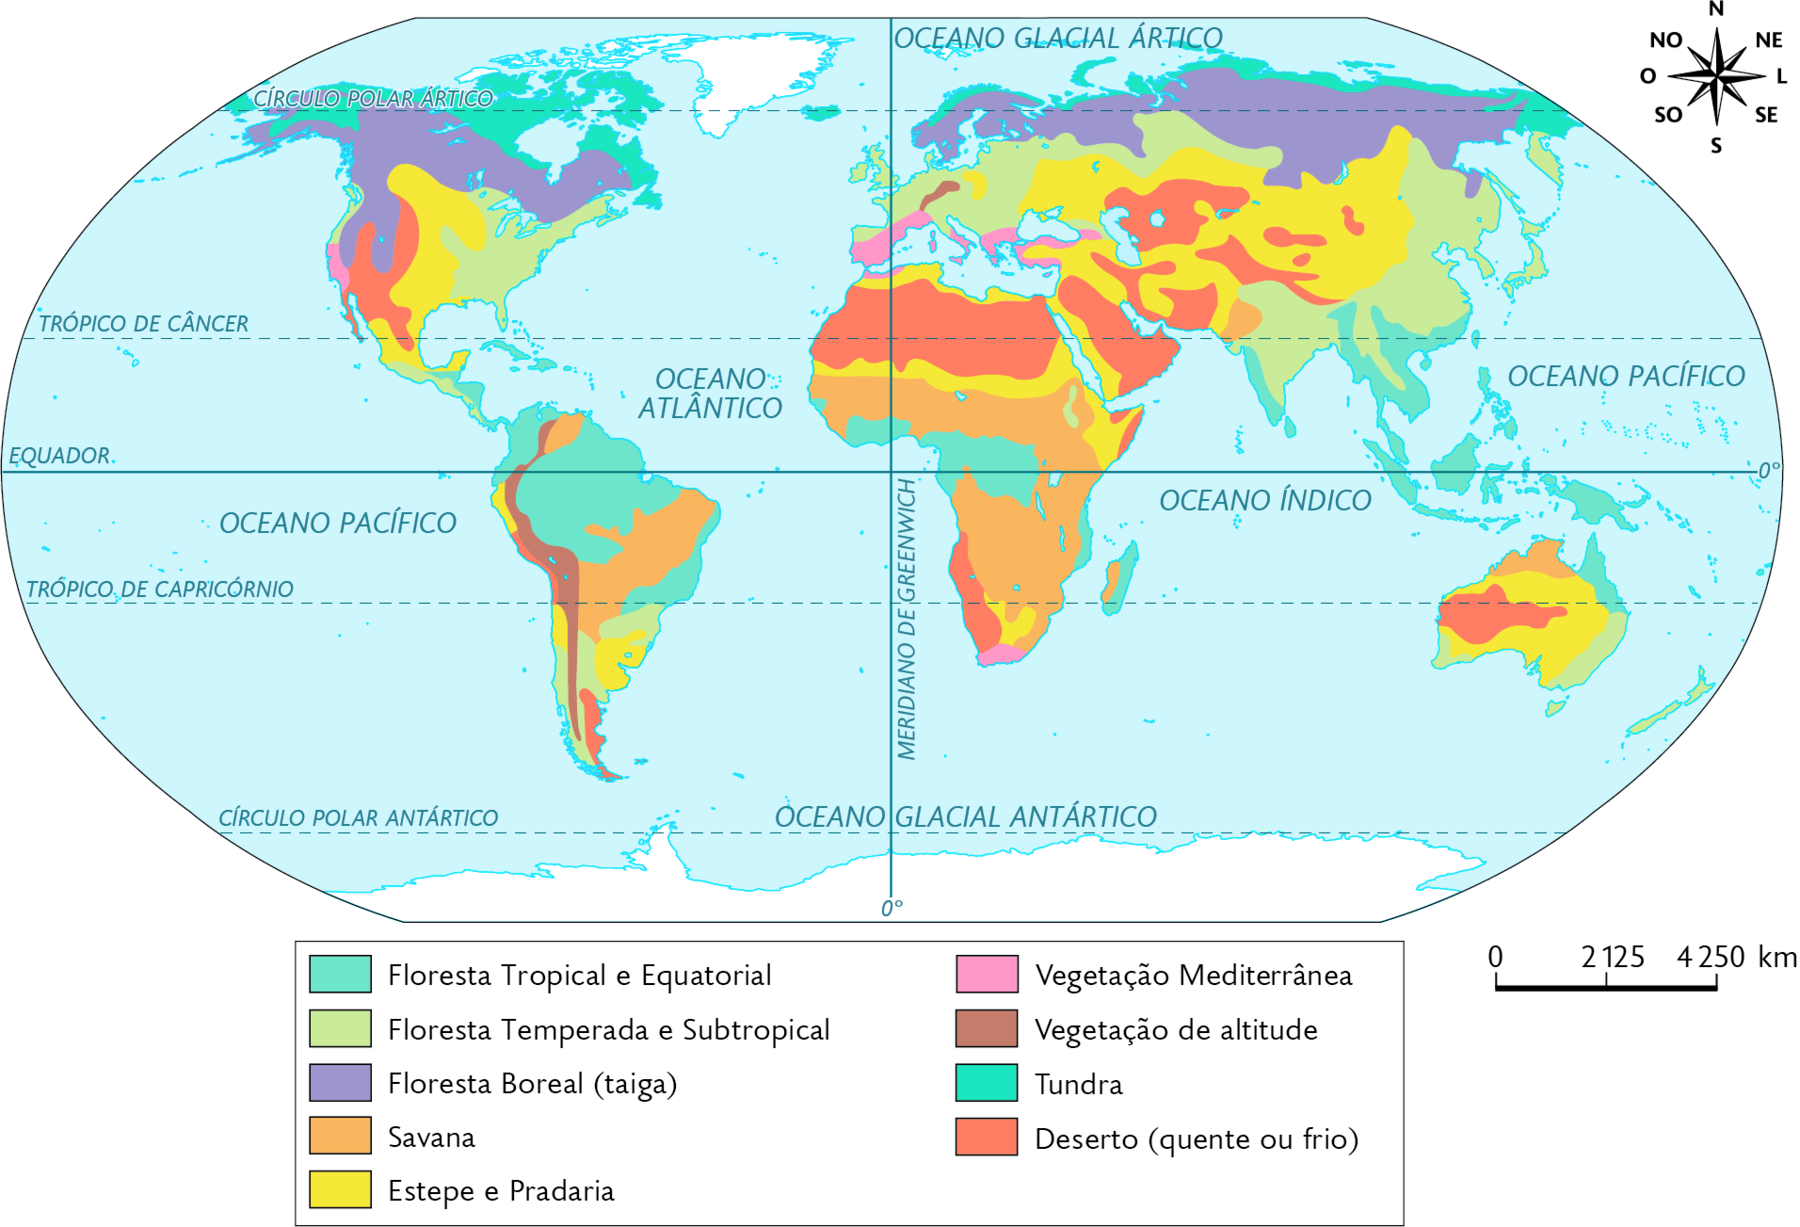 Mapa-múndi. Formações vegetais no mundo (2019). Floresta Tropical e Equatorial: sul da América Central, norte e leste da América do Sul, oeste e centro da África, sul e sudeste da Ásia, incluindo suas ilhas, e nordeste da Austrália. Floresta Temperada e Subtropical: leste da América do Norte, centro da América Central, áreas no sul da América do Sul, toda a porção central da Europa, faixa no norte, área no leste e sudeste da Ásia. Floresta Boreal (taiga): Norte da América do Norte, da Europa e da Ásia. Savana: pequena área no norte e faixa no nordeste e centro-oeste da América do Sul, centro e sul da África, pequena área no sul da Ásia e norte da Austrália. Estepe e Pradaria: centro e sul da América do Norte, áreas no oeste e no sul da América do Sul, faixas no norte e áreas no leste e no sul da África, área dispersas no centro e sul da Ásia, e centro e sul da Austrália. Vegetação Mediterrânea: área no oeste da América do Norte e sul, faixa sul da Europa e extremo sul da África. Vegetação de altitude: costa oeste da América do Sul e pequena área no centro-oeste da Europa. Tundra: Norte da América do Norte e faixa no extremo norte da Europa e da Ásia. Deserto (quente ou frio): oeste da América do Norte, e pequenas áreas no oeste e no sul da América do Sul, norte e sudoeste da África, áreas dispersas no centro e no sul da Ásia e oeste da Austrália. No canto superior direito, a rosa dos ventos e na parte inferior, a escala: 2125 quilômetros por centímetro.